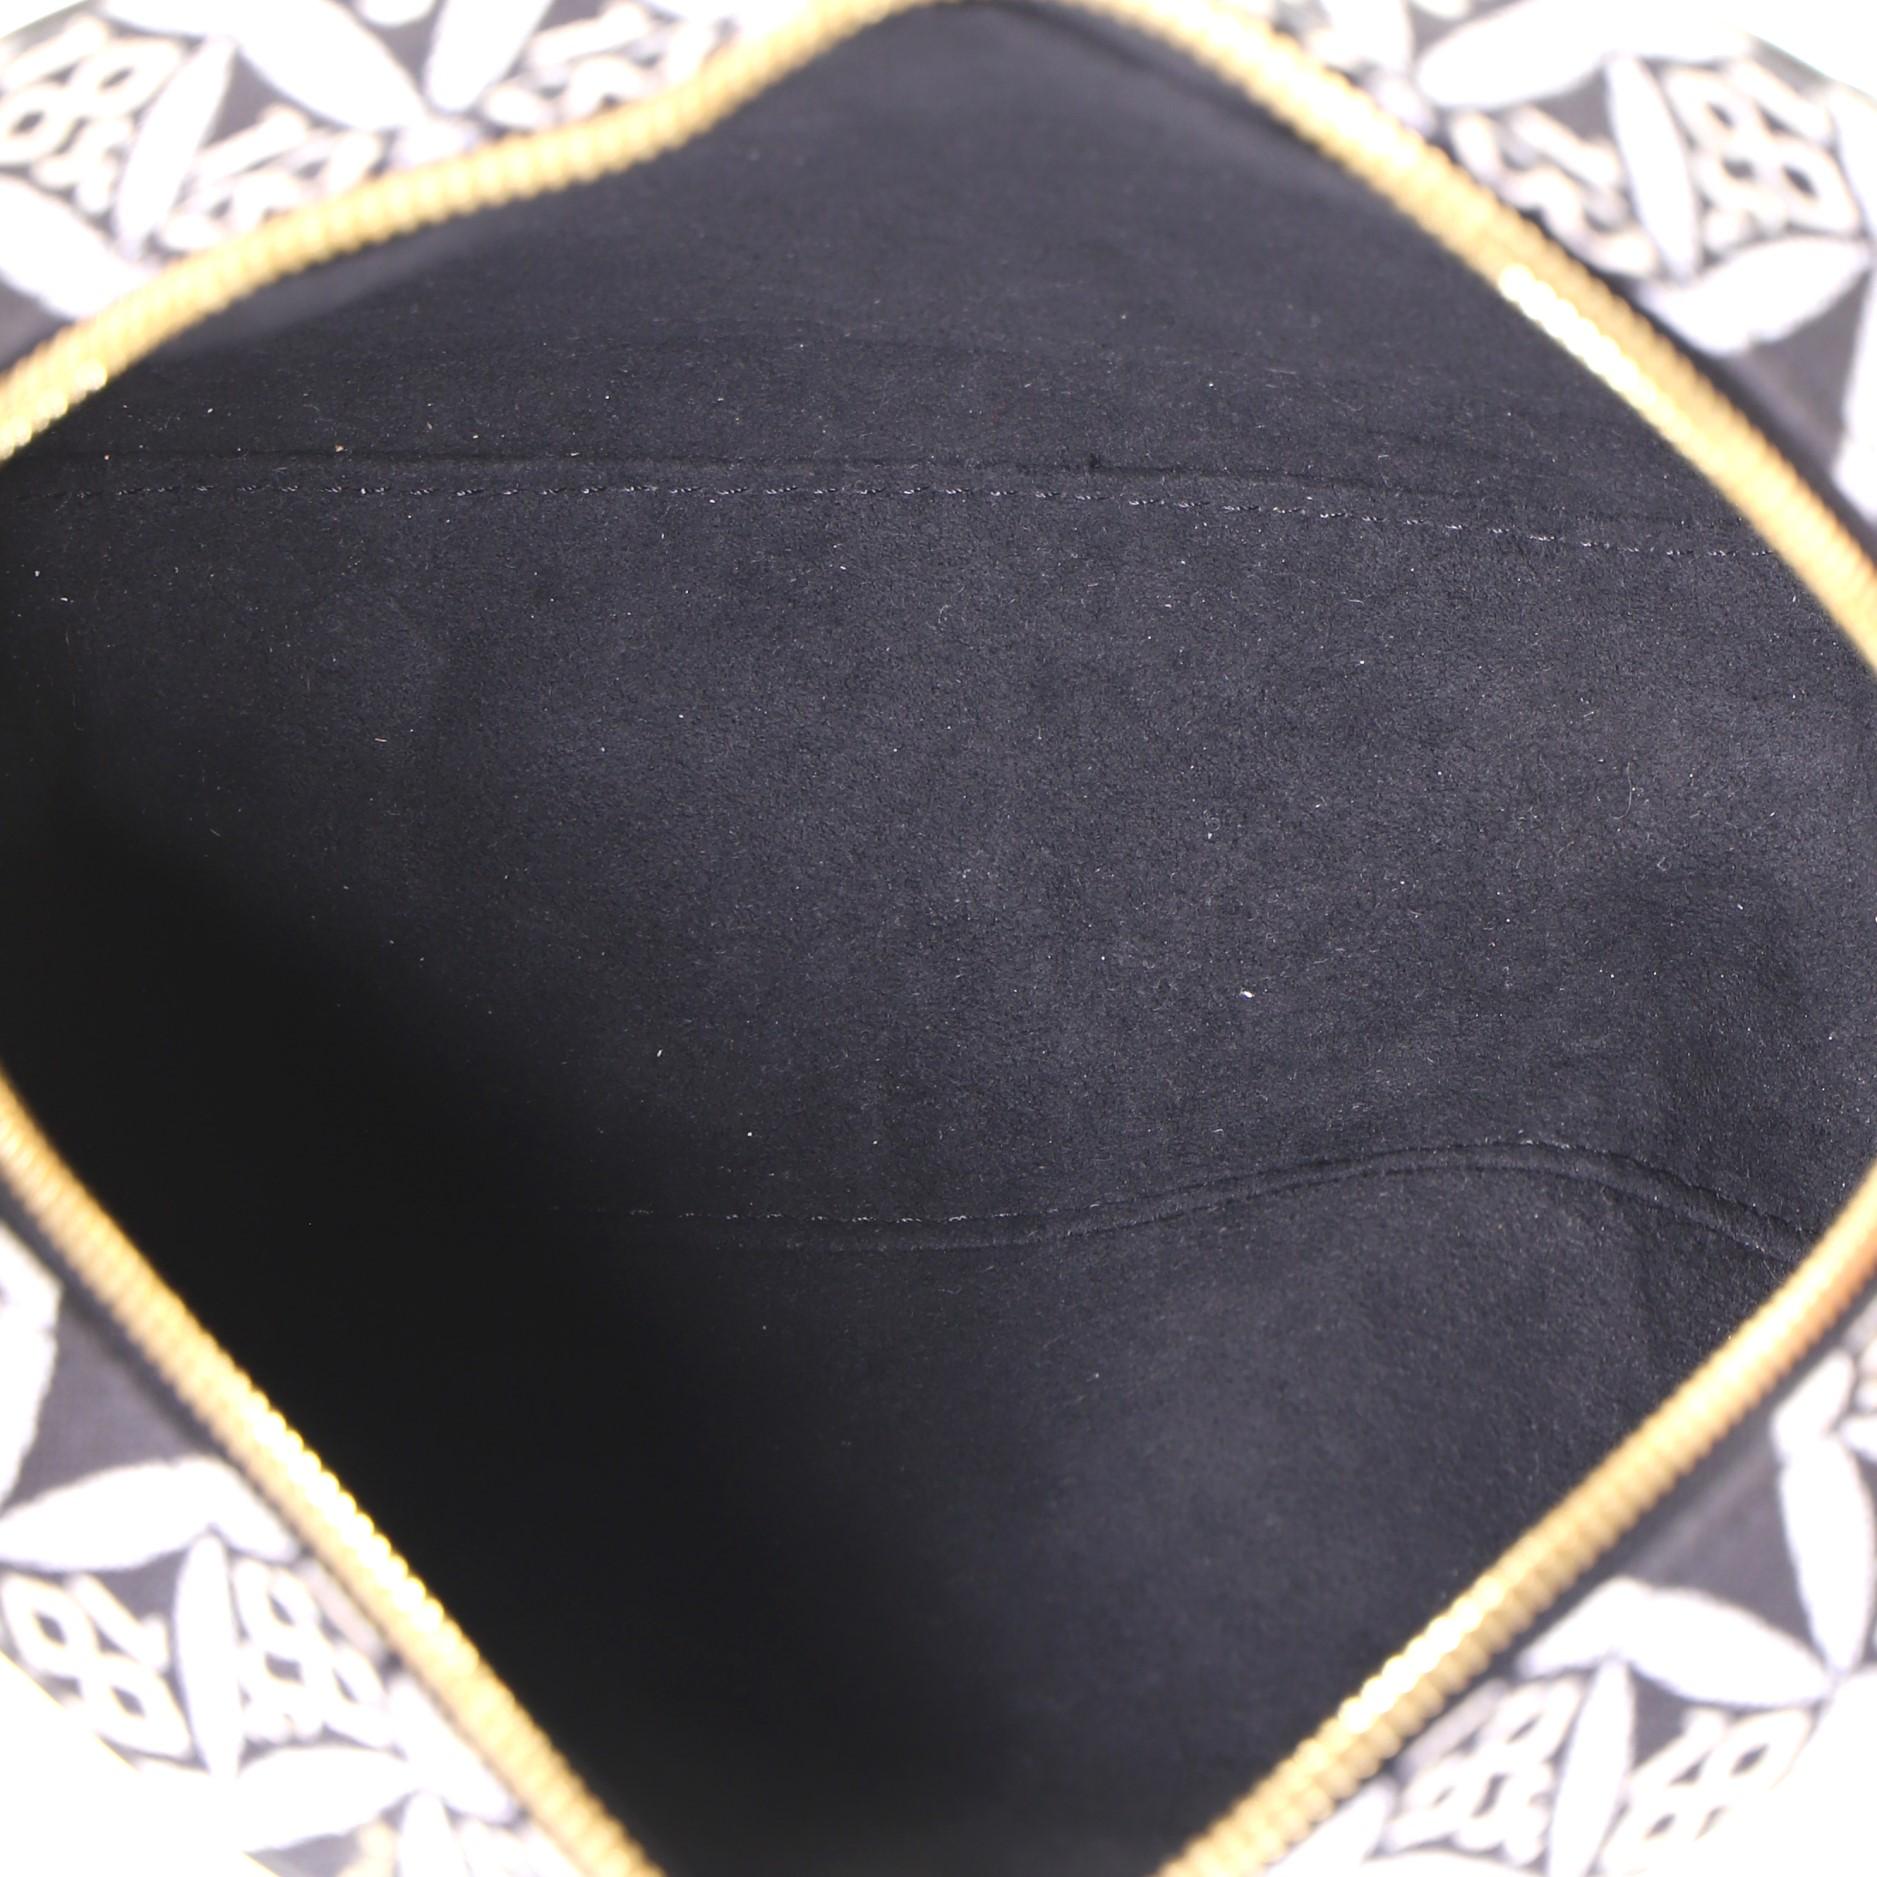 Louis Vuitton Deauville Handbag Limited Edition Since 1854 Monogram Jacquard Min 1